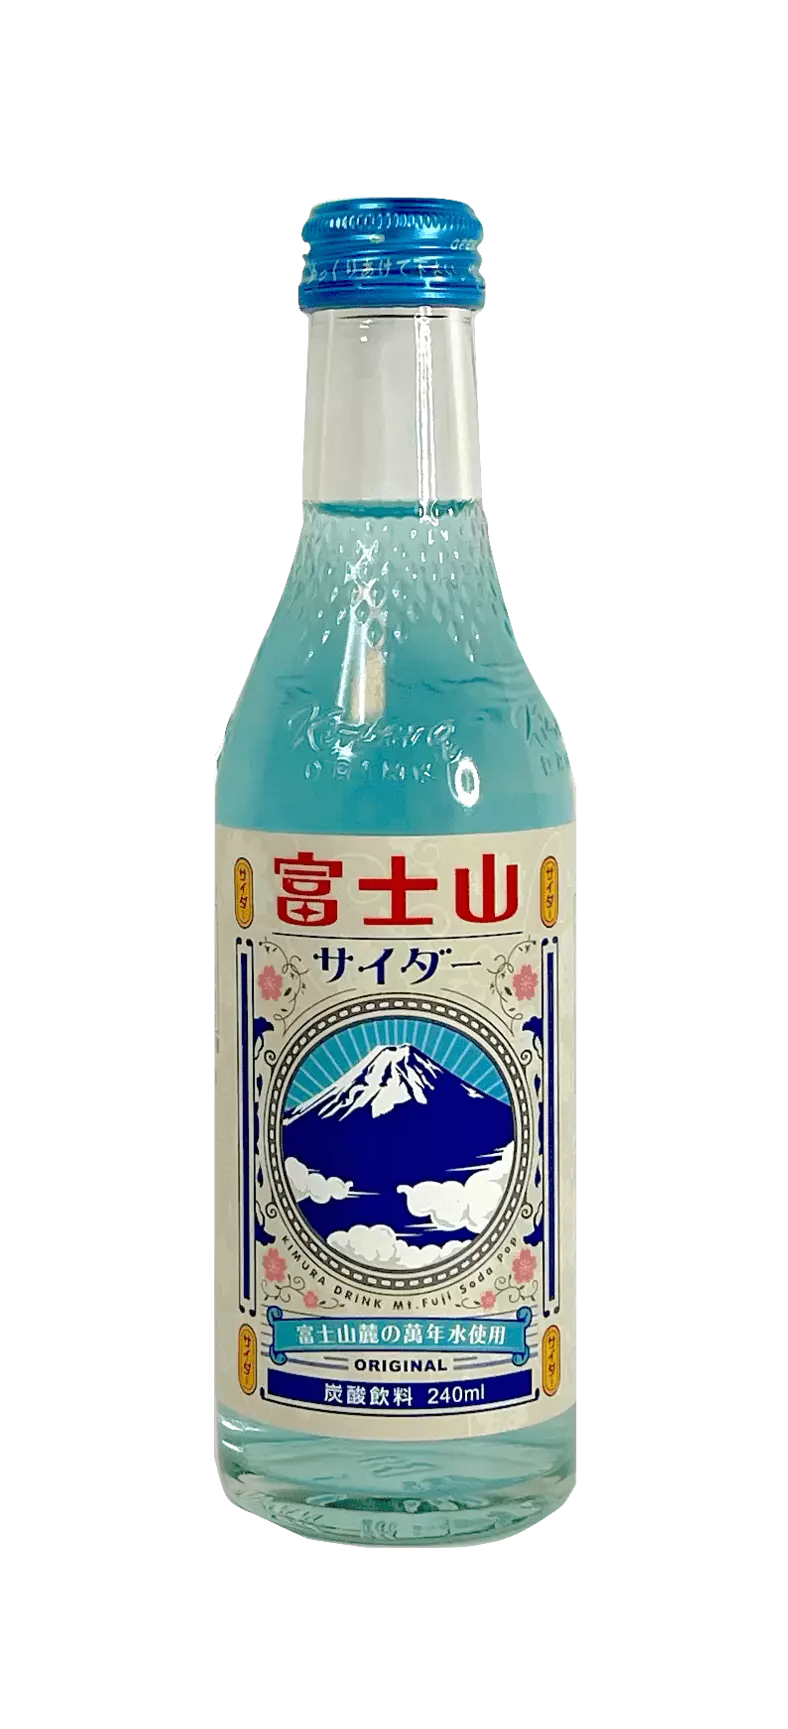 碳酸饮料 原味 240ml 富士山 日本